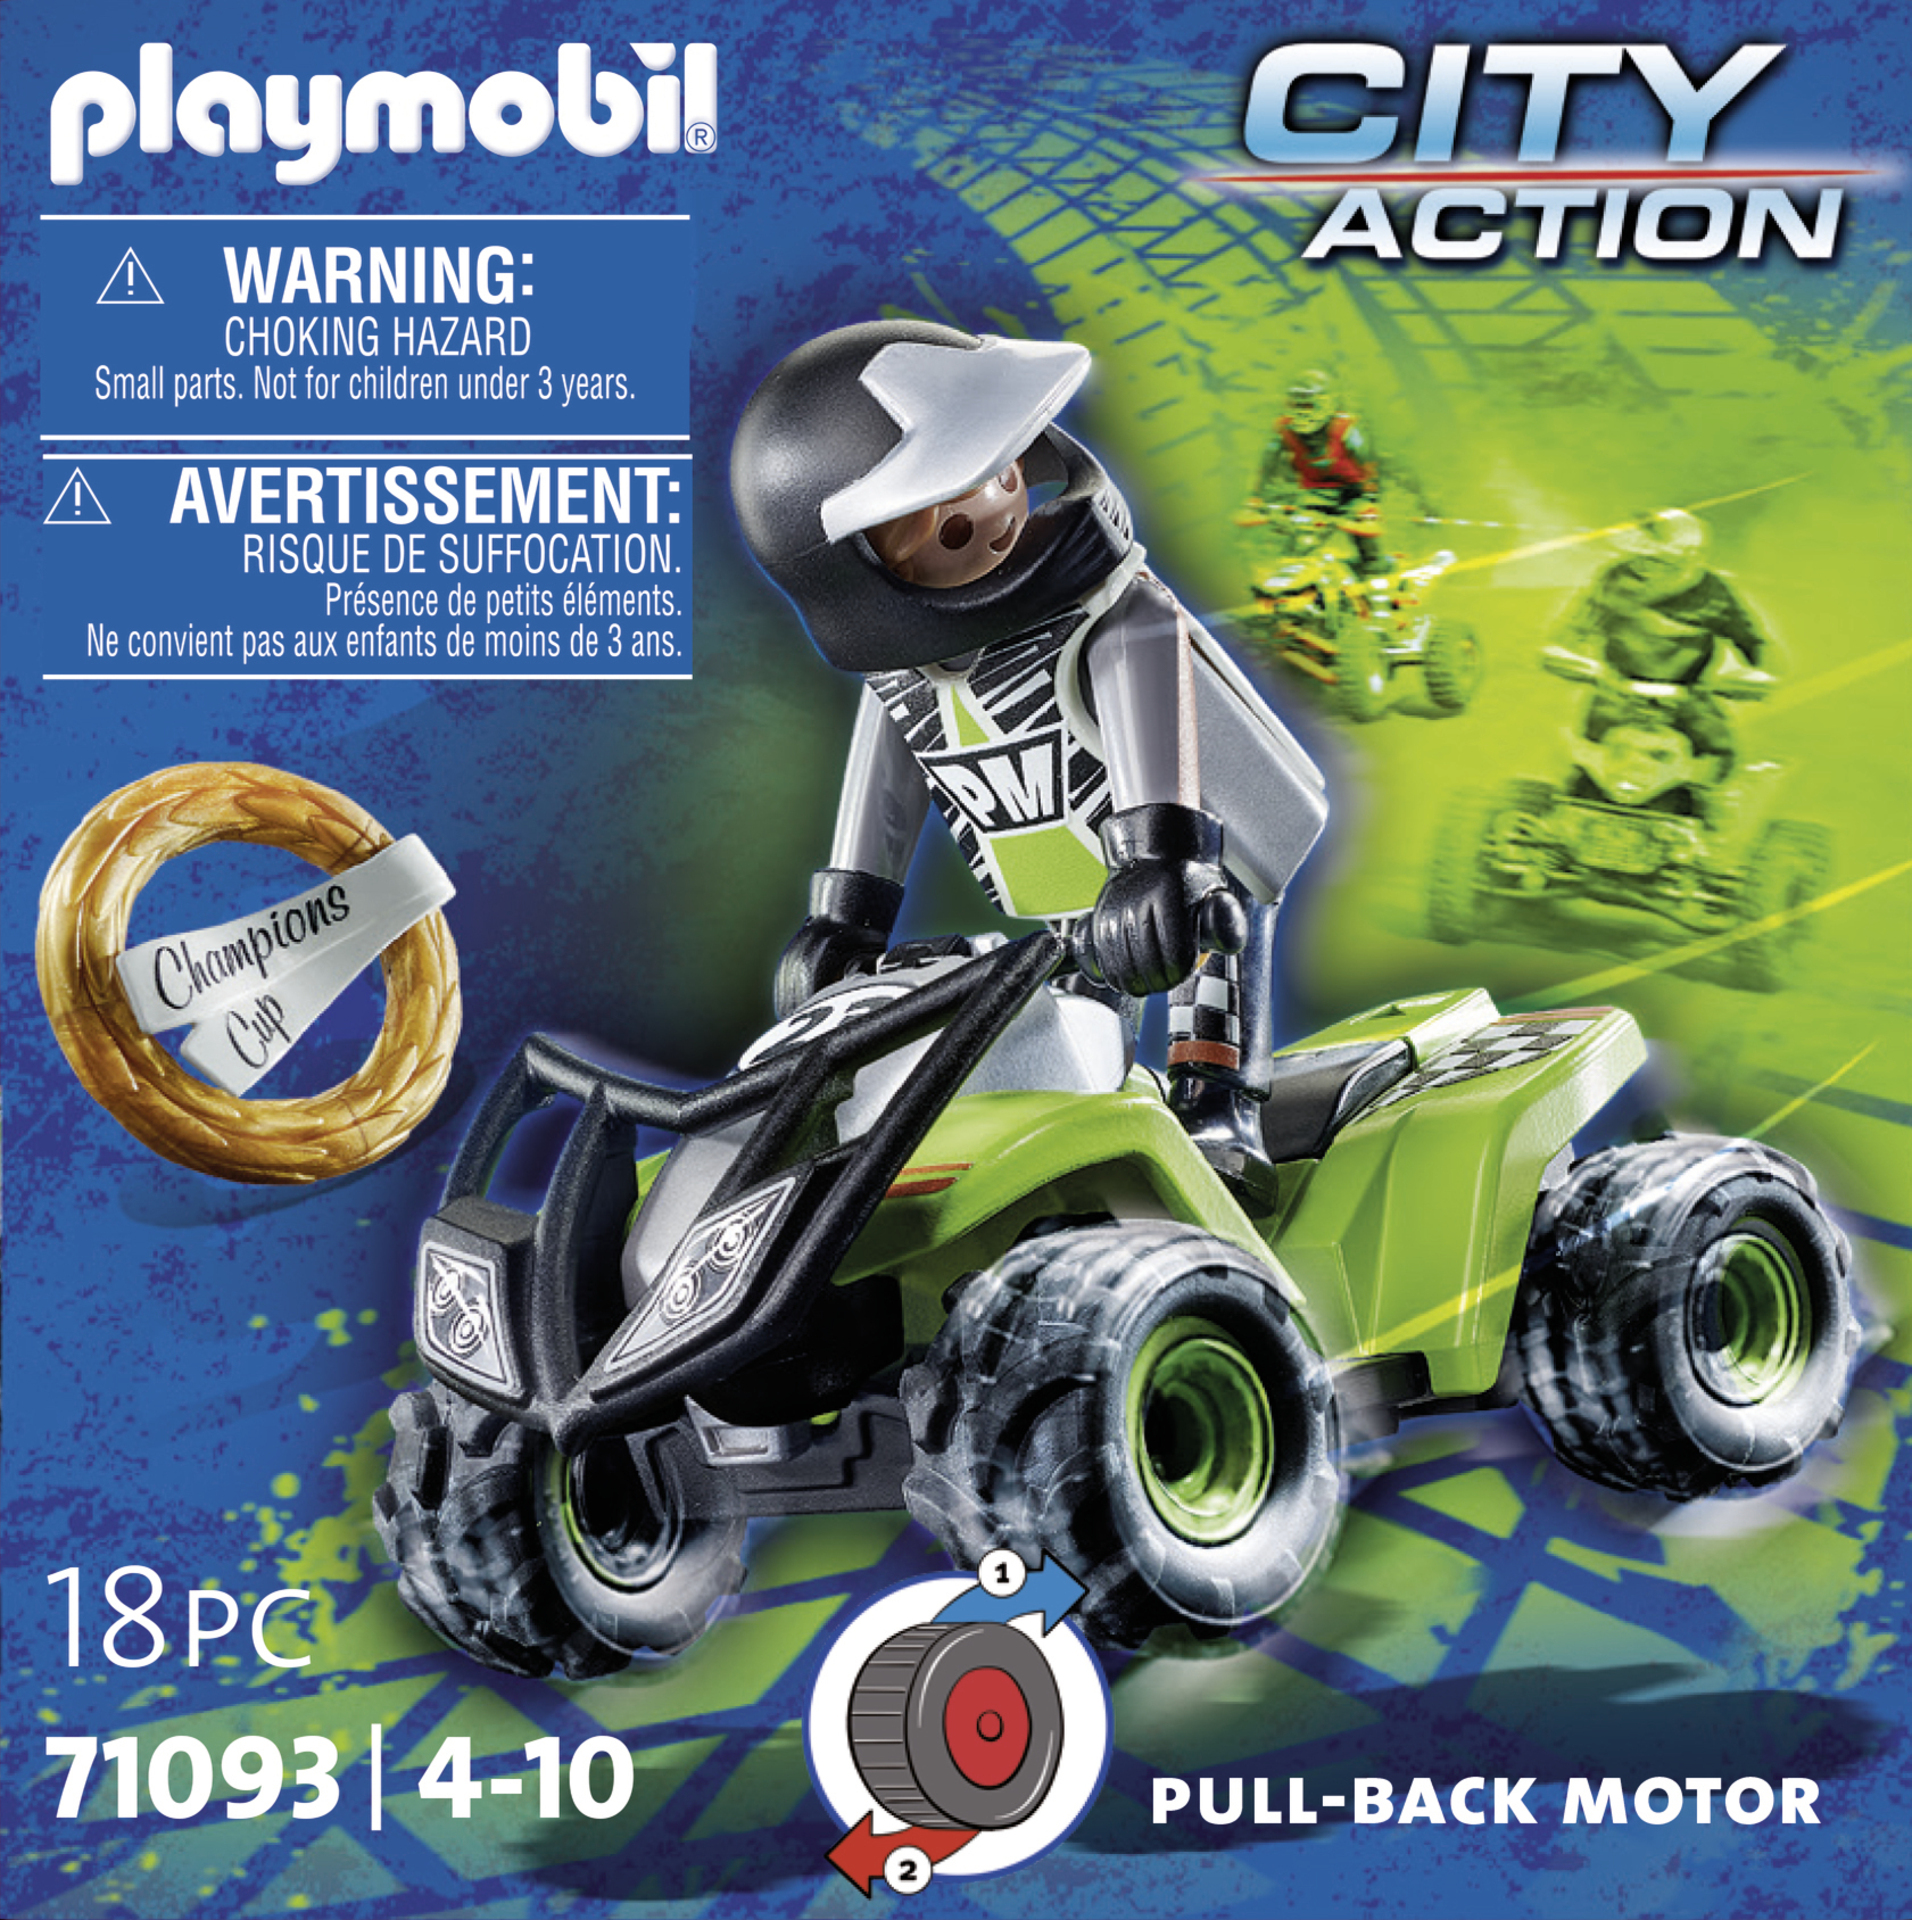 City action le quad de la ferme Playmobil